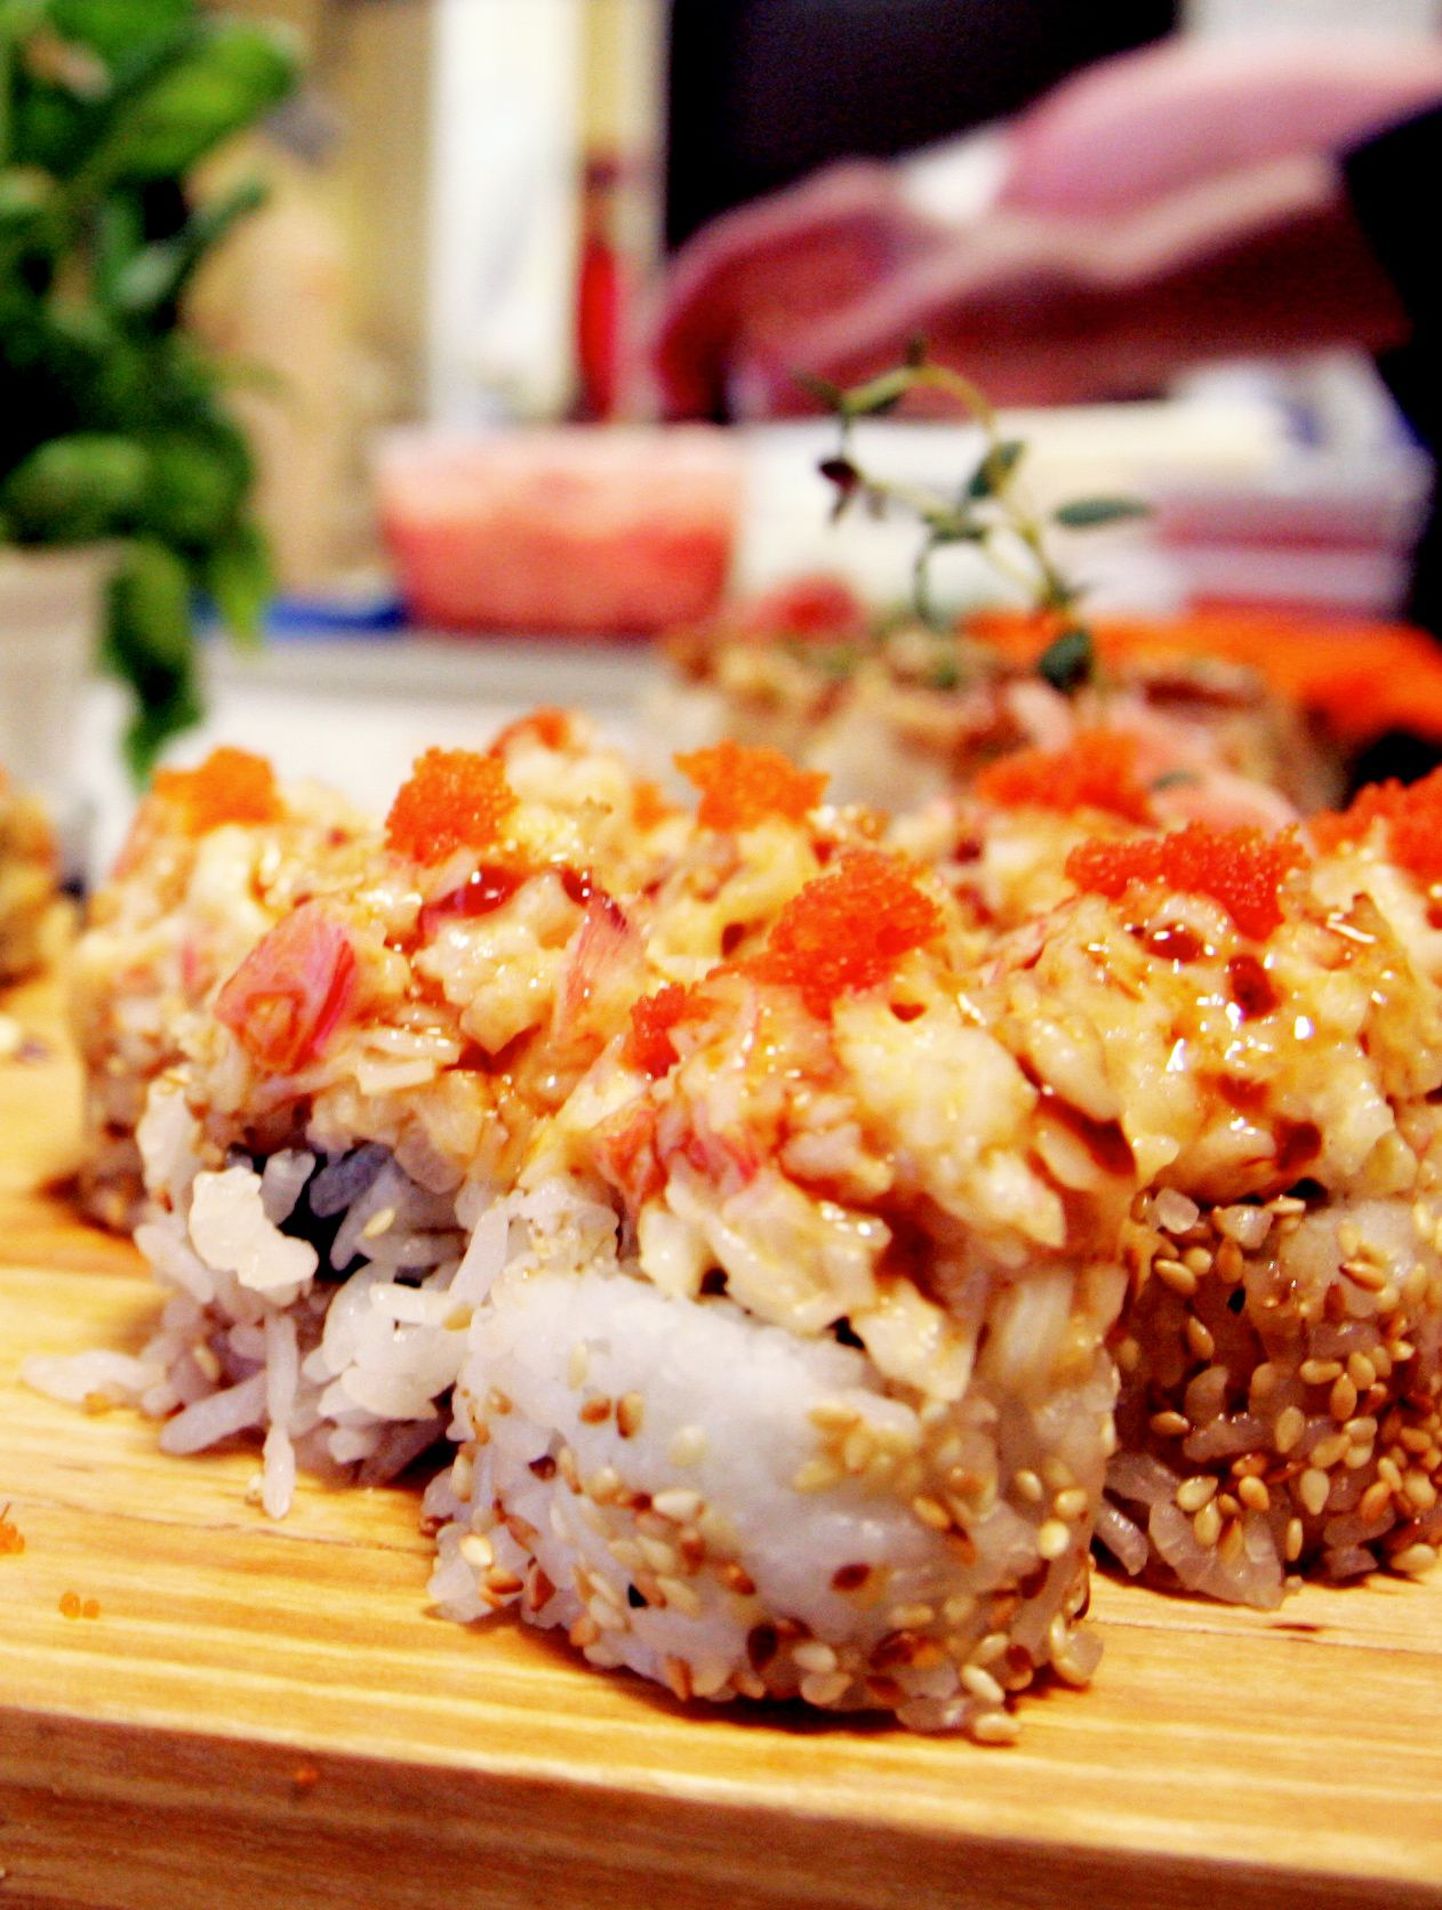 Jaapani traditsiooniline toit on sushi. Foto on illustratiivne.